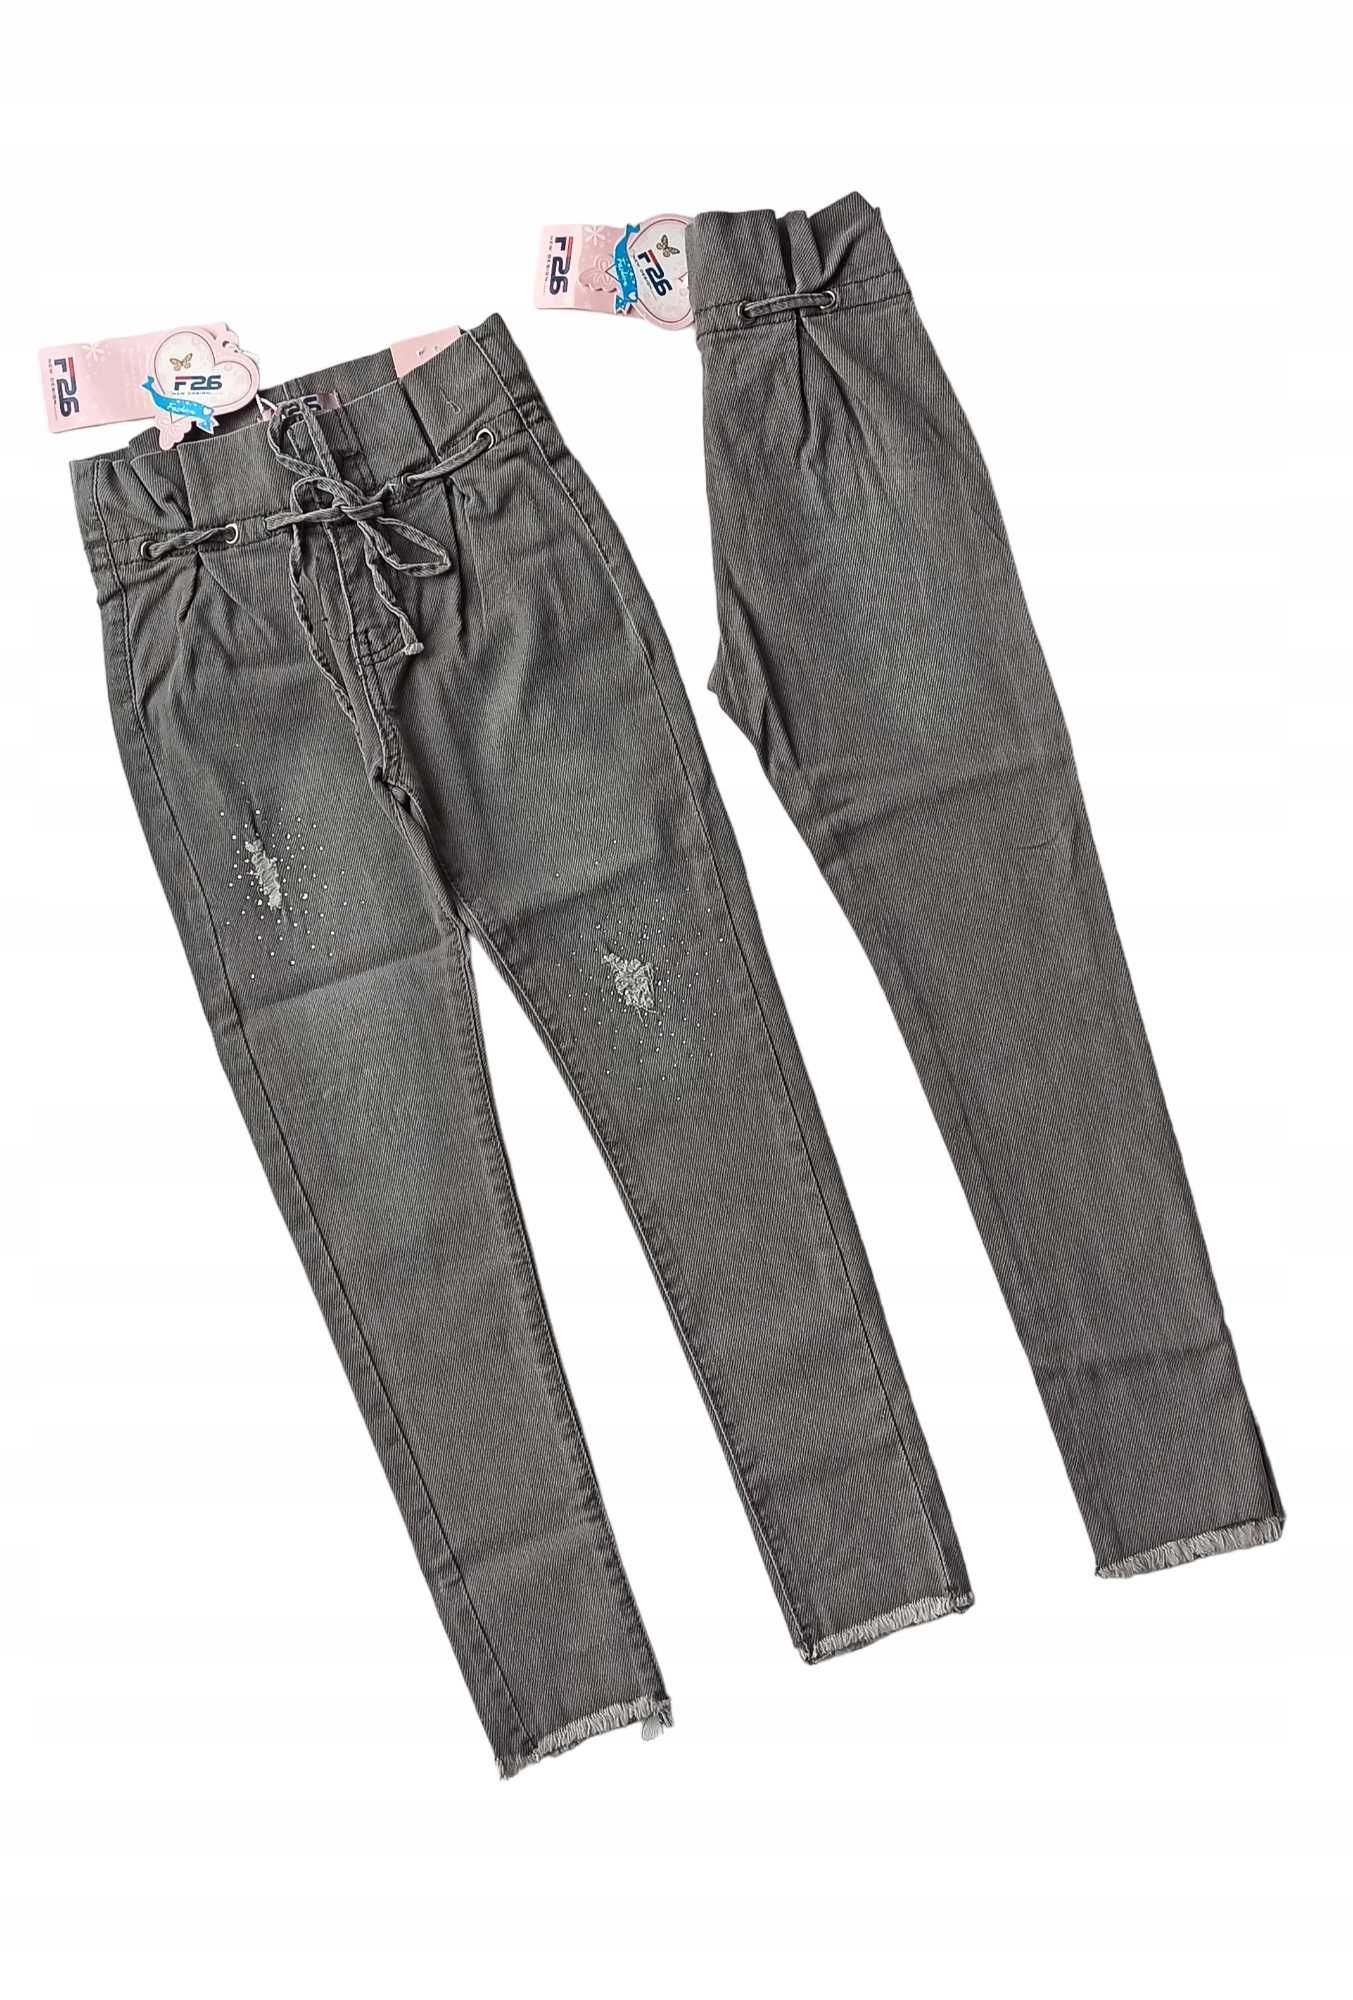 Spodnie jeans dla dziewczynki na gumce nowy 134-140